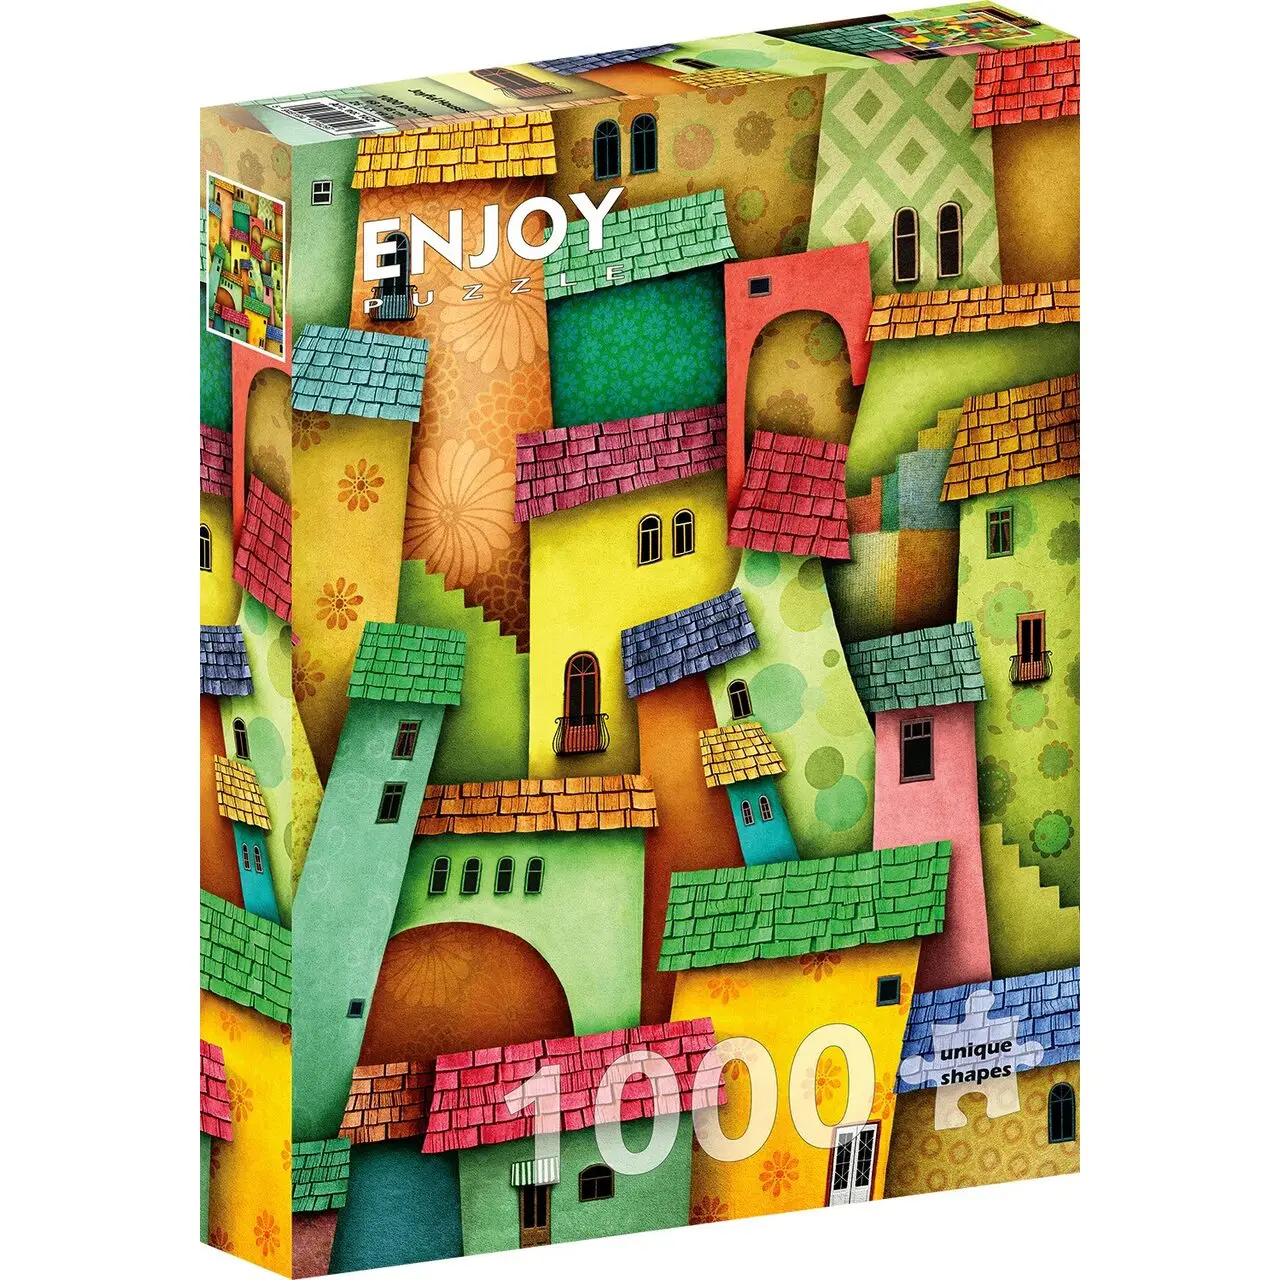 Puzzle Joyful Houses